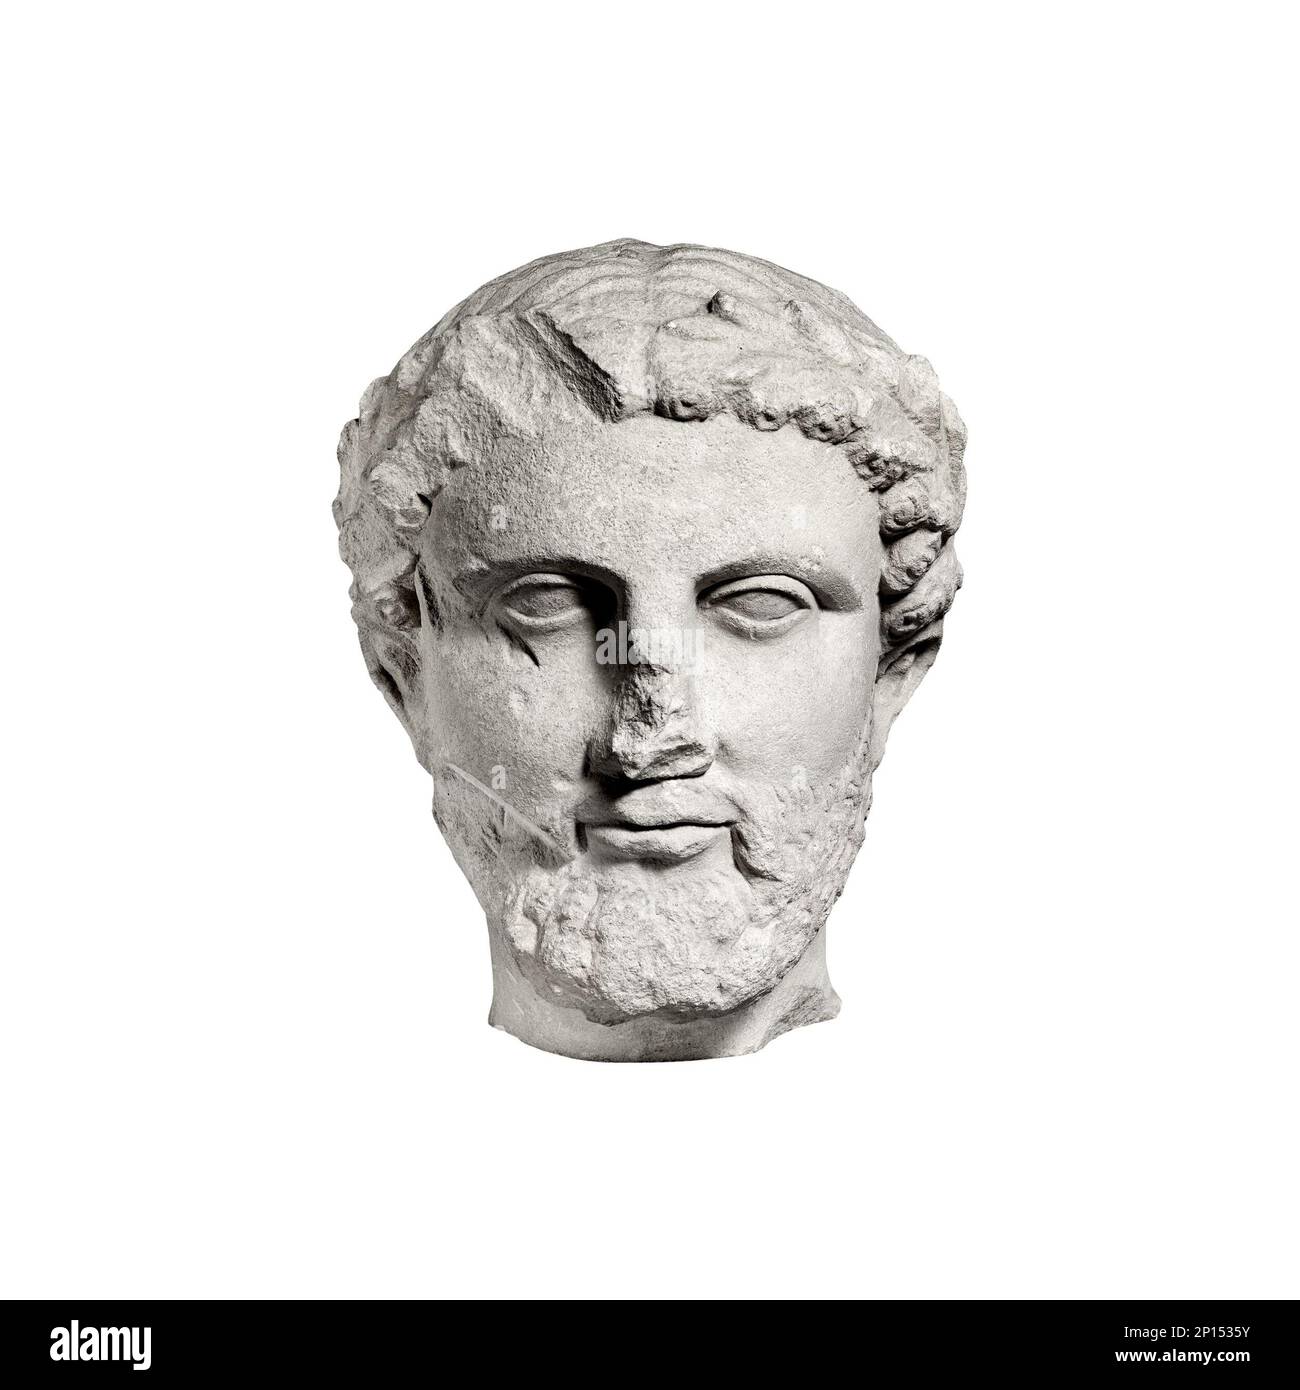 Der Kopf eines alten klassischen griechischen Philosophen hat einen isolierten Blick nach vorne, ein schwarz-weißer, bärtiger Kopf aus Kalkstein mit einem Kranz aus Blättern Stockfoto